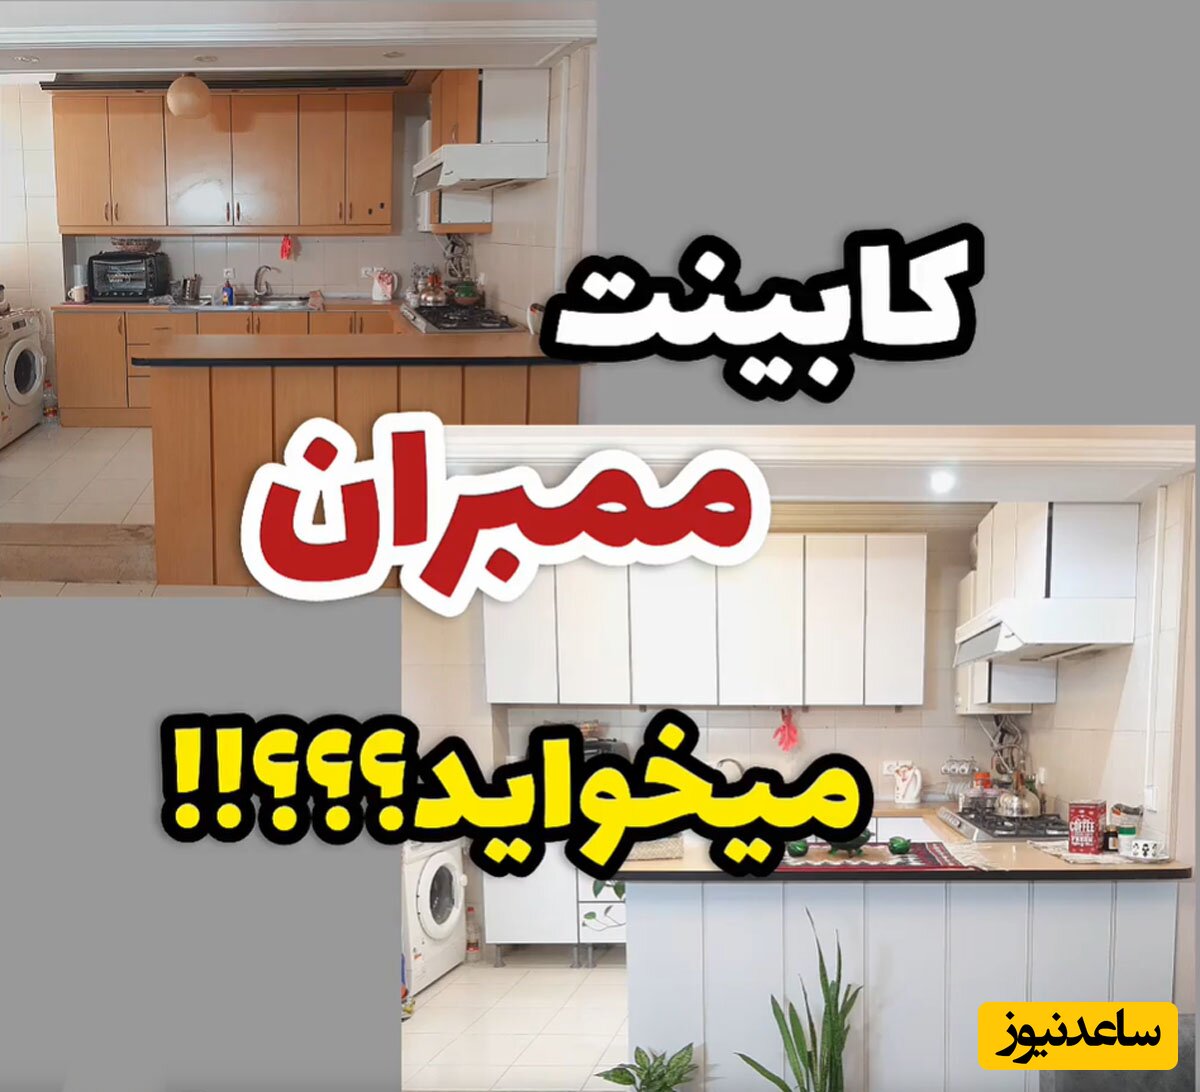 (فیلم) چطوری 3 سوته و ارزان قیمت کابینت‌ها رو ممبران کنیم؟! / شب عیدی با کمترین هزینه خونتوم نو کن